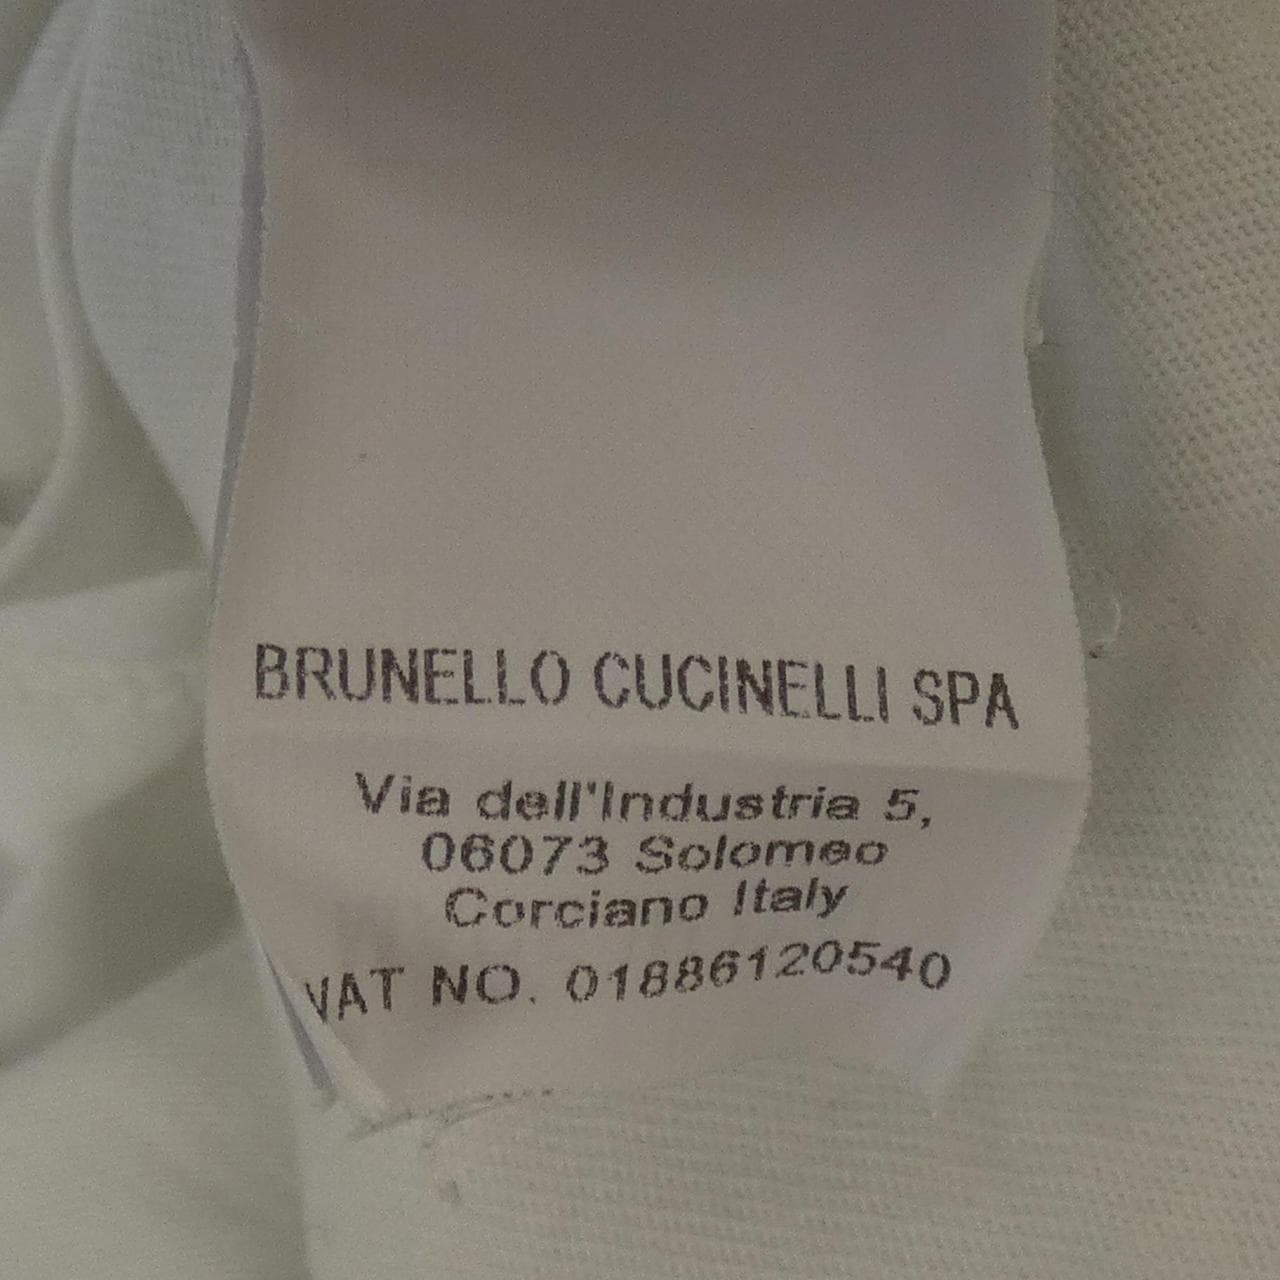 ブルネロクチネリ BRUNELLO CUCINELLI Tシャツ